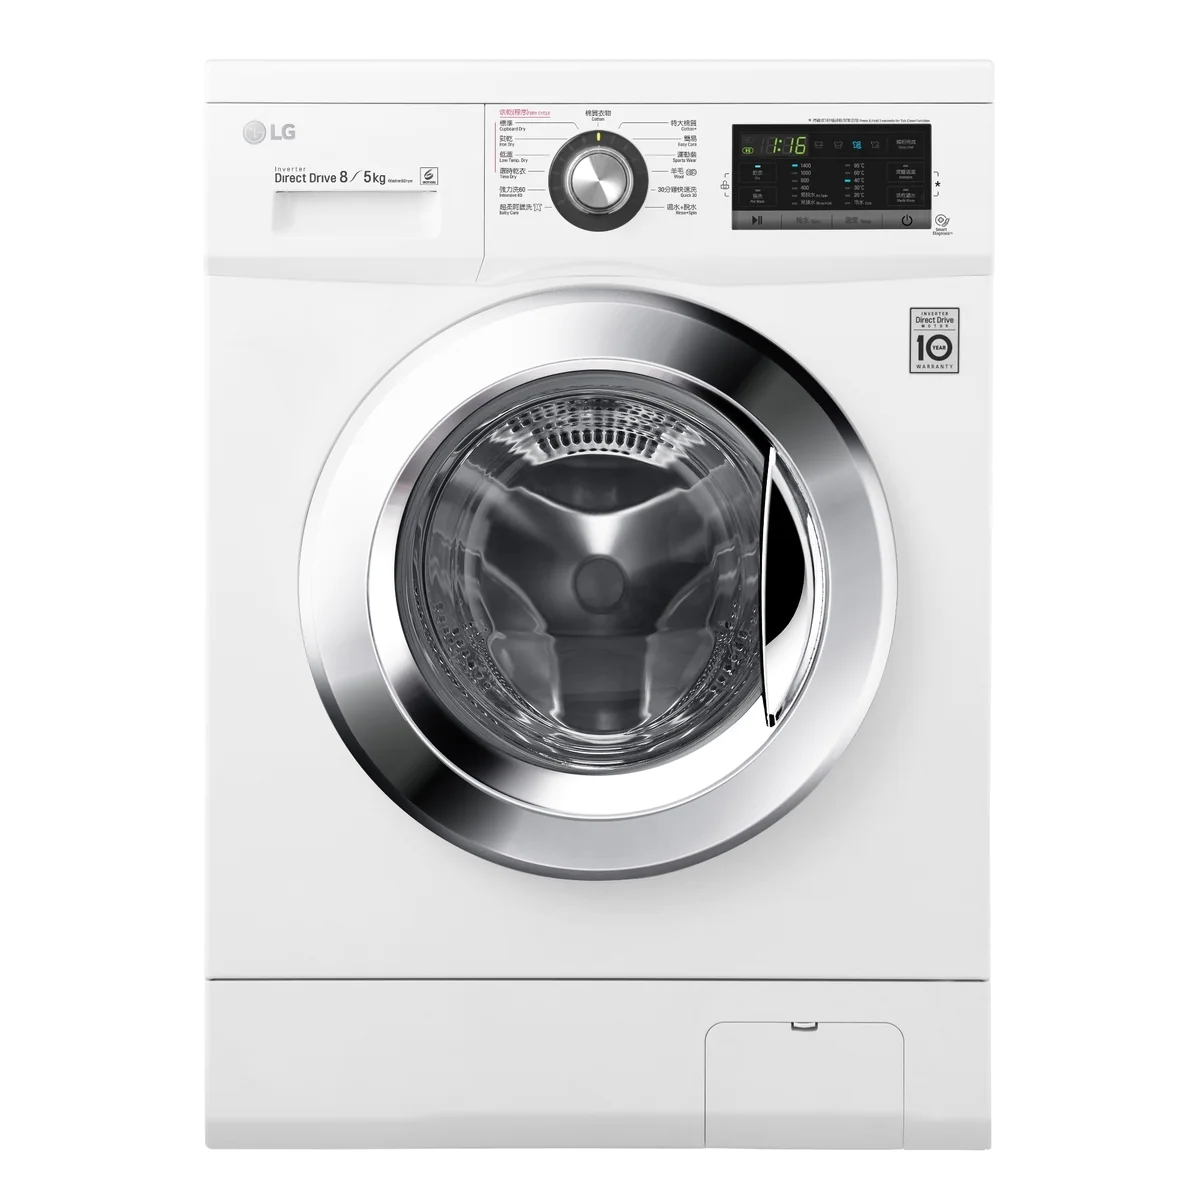 LG WF-CT1408MW 2in1 Washer Dryer 8kg/5kg 1400rpm 8公共/5kg 1400轉 洗衣乾衣機